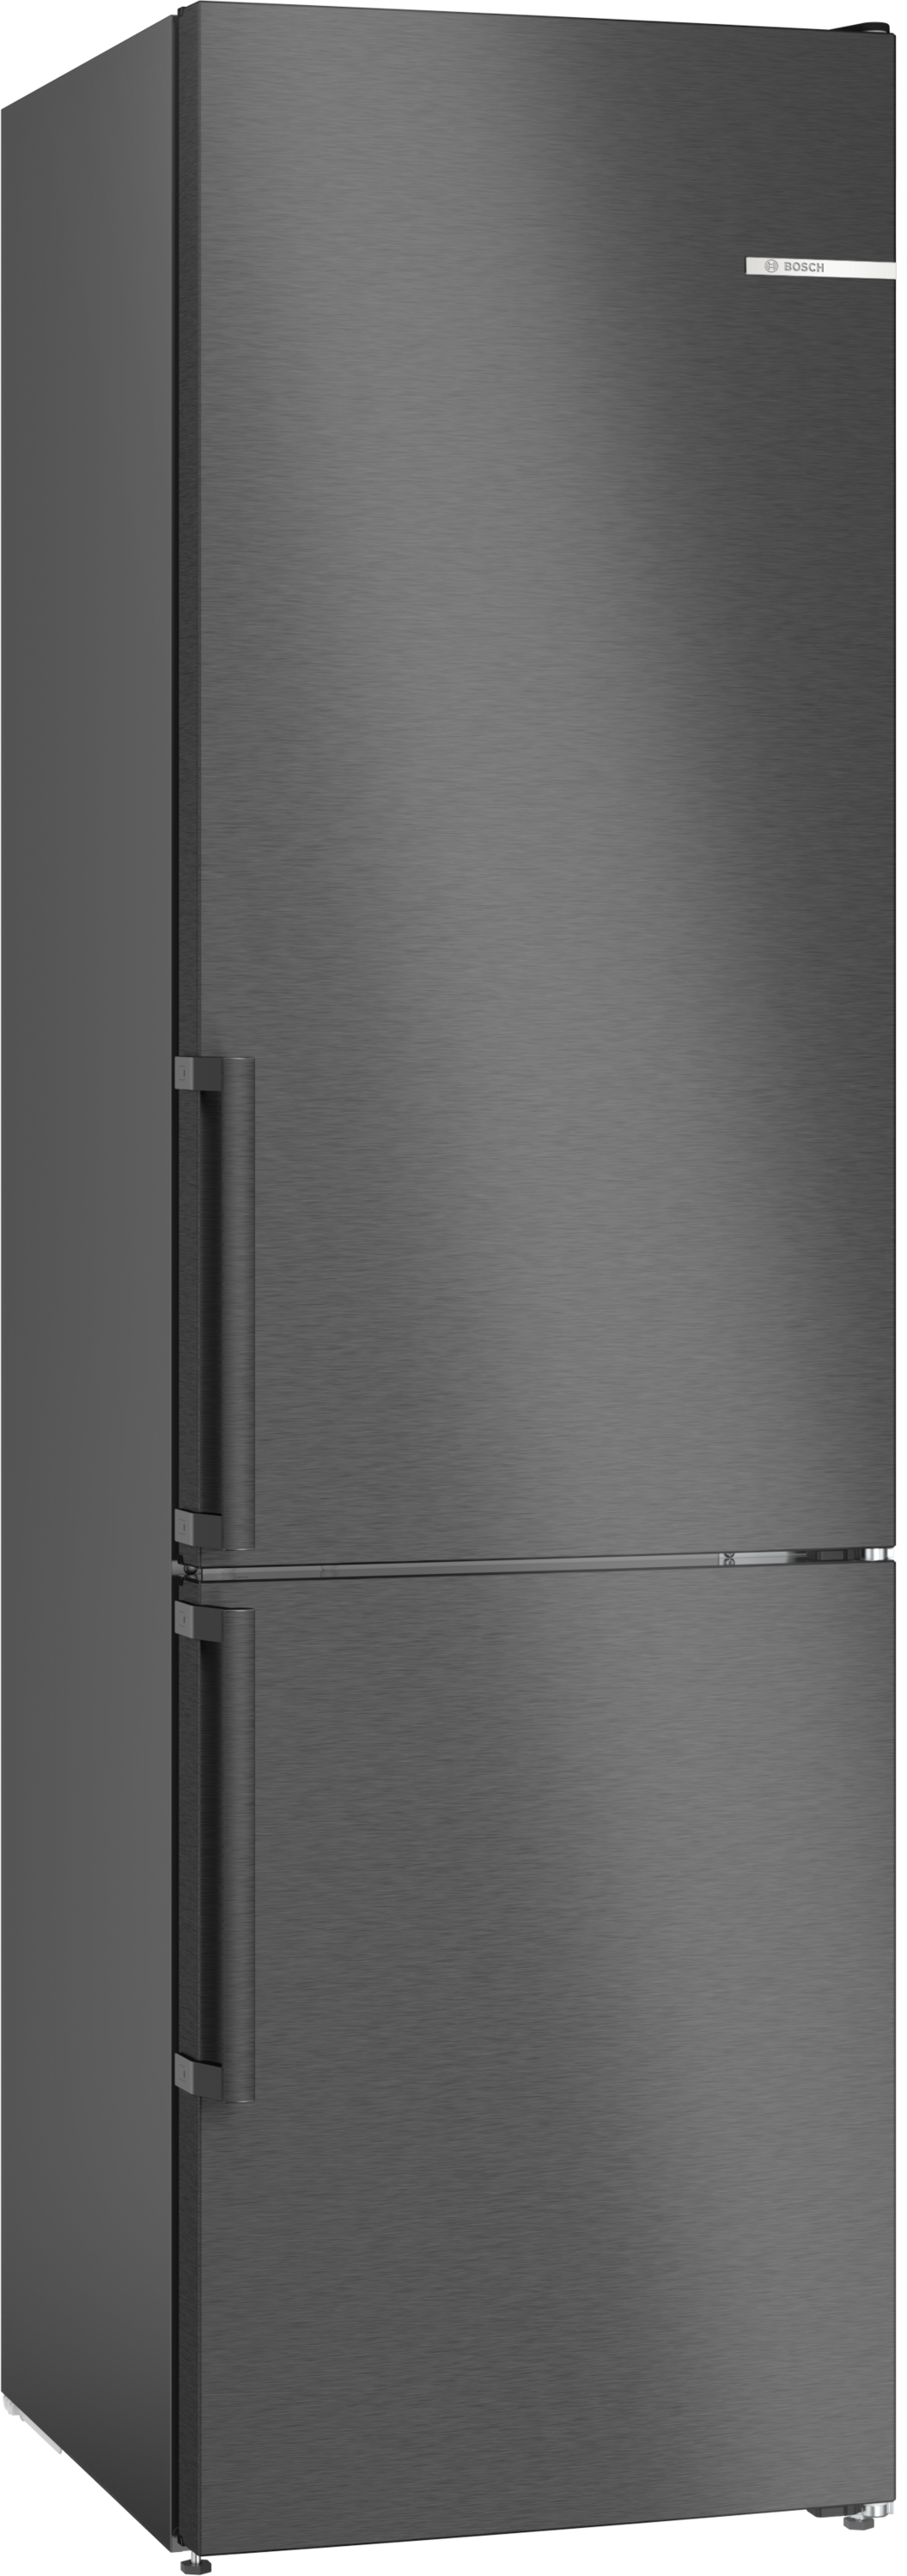 Bosch Serie 4, Freistehende Kühl-Gefrier-Kombination mit Gefrierbereich unten, 203 x 60 cm, Edelstahl schwarz, KGN39OXBT